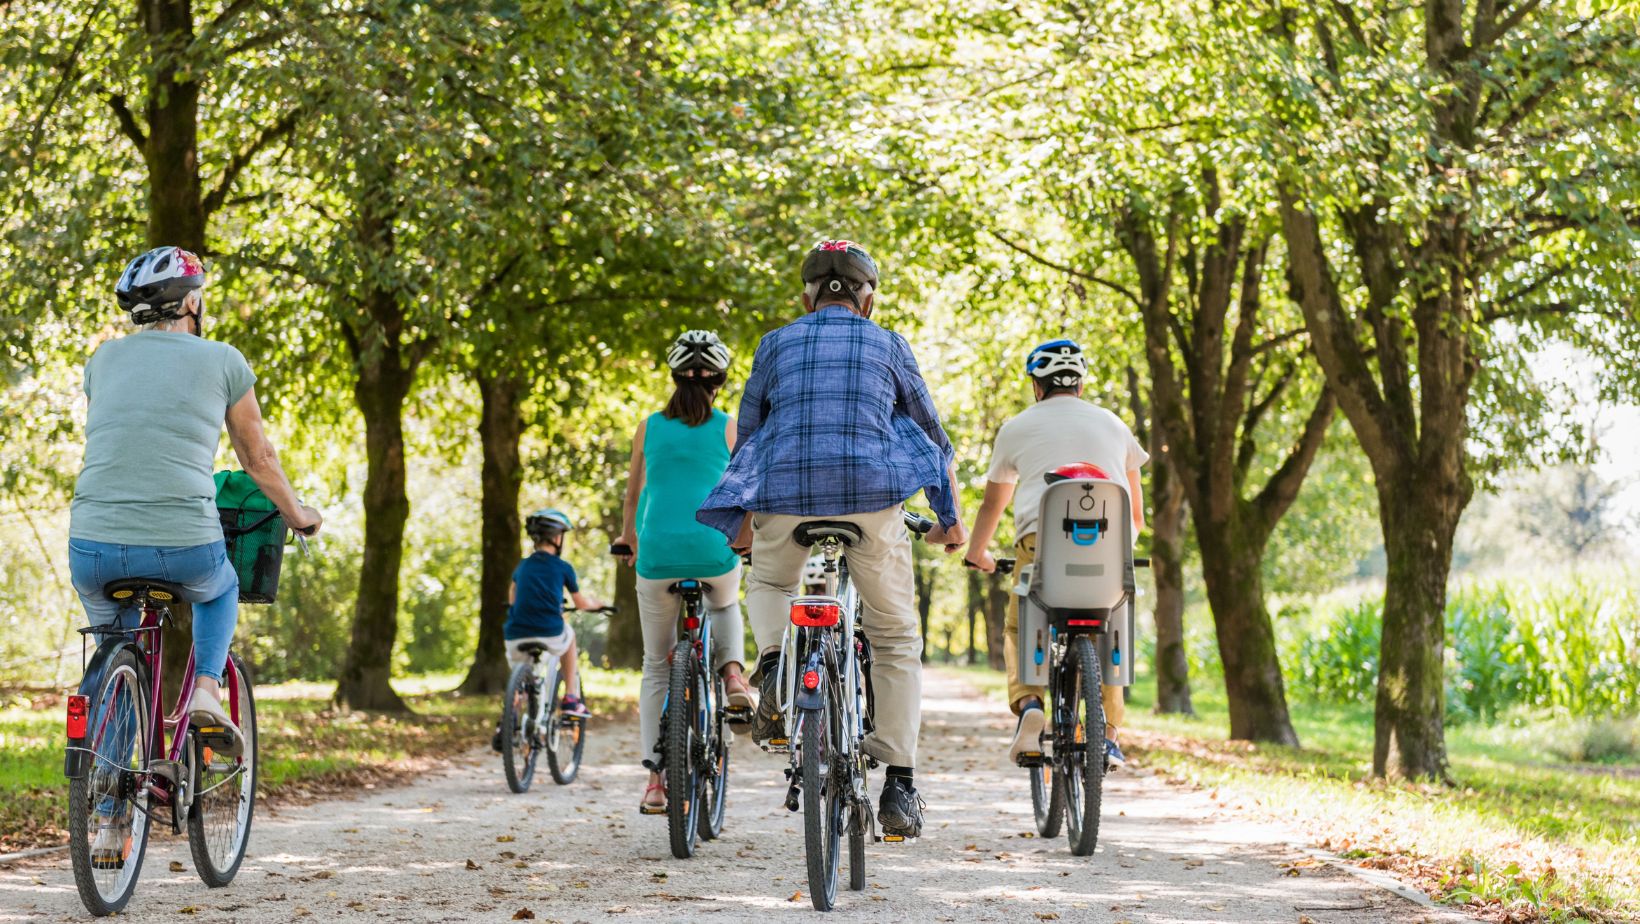 Ciclismo, trilha e caminhada: veja dicas médicas para não colocar a saúde em risco durante a prática nas férias